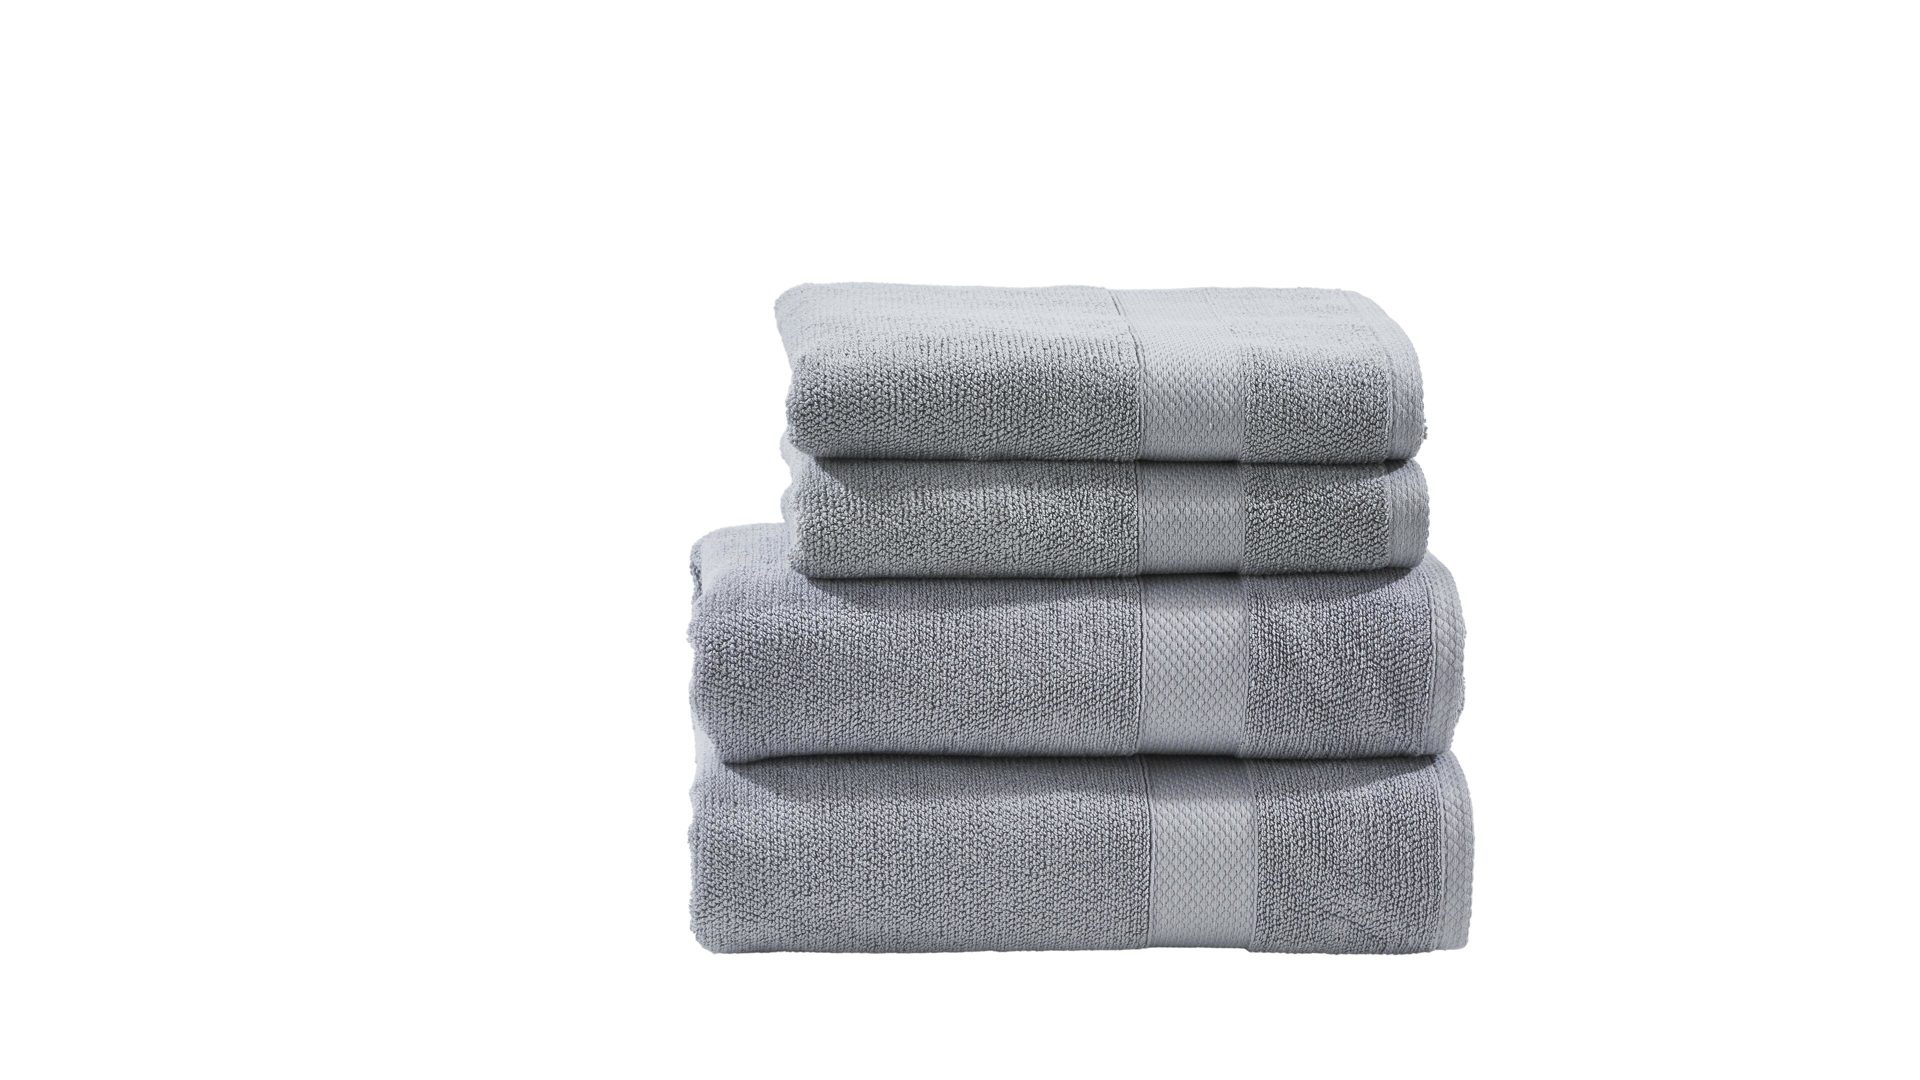 Handtuch-Set Done by karabel home company aus Stoff in Grau done Handtuch-Set Deluxe silberfarbene Baumwolle – vierteilig